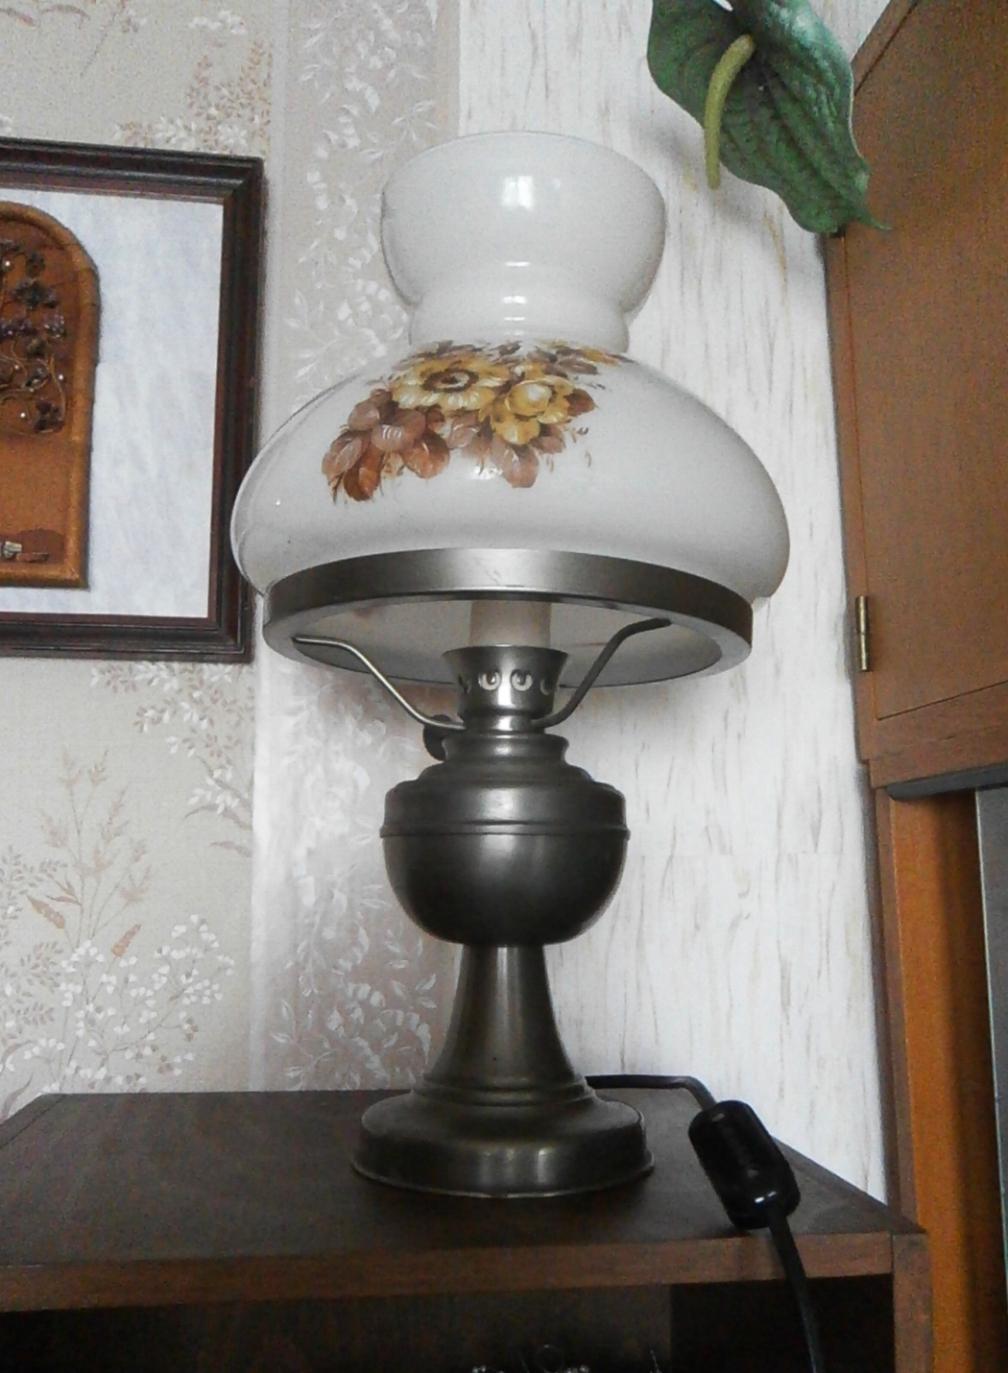 Lampa elektrická petrolejka kovový podstavec, malovaný skleněný kryt - Obrázek č. 2